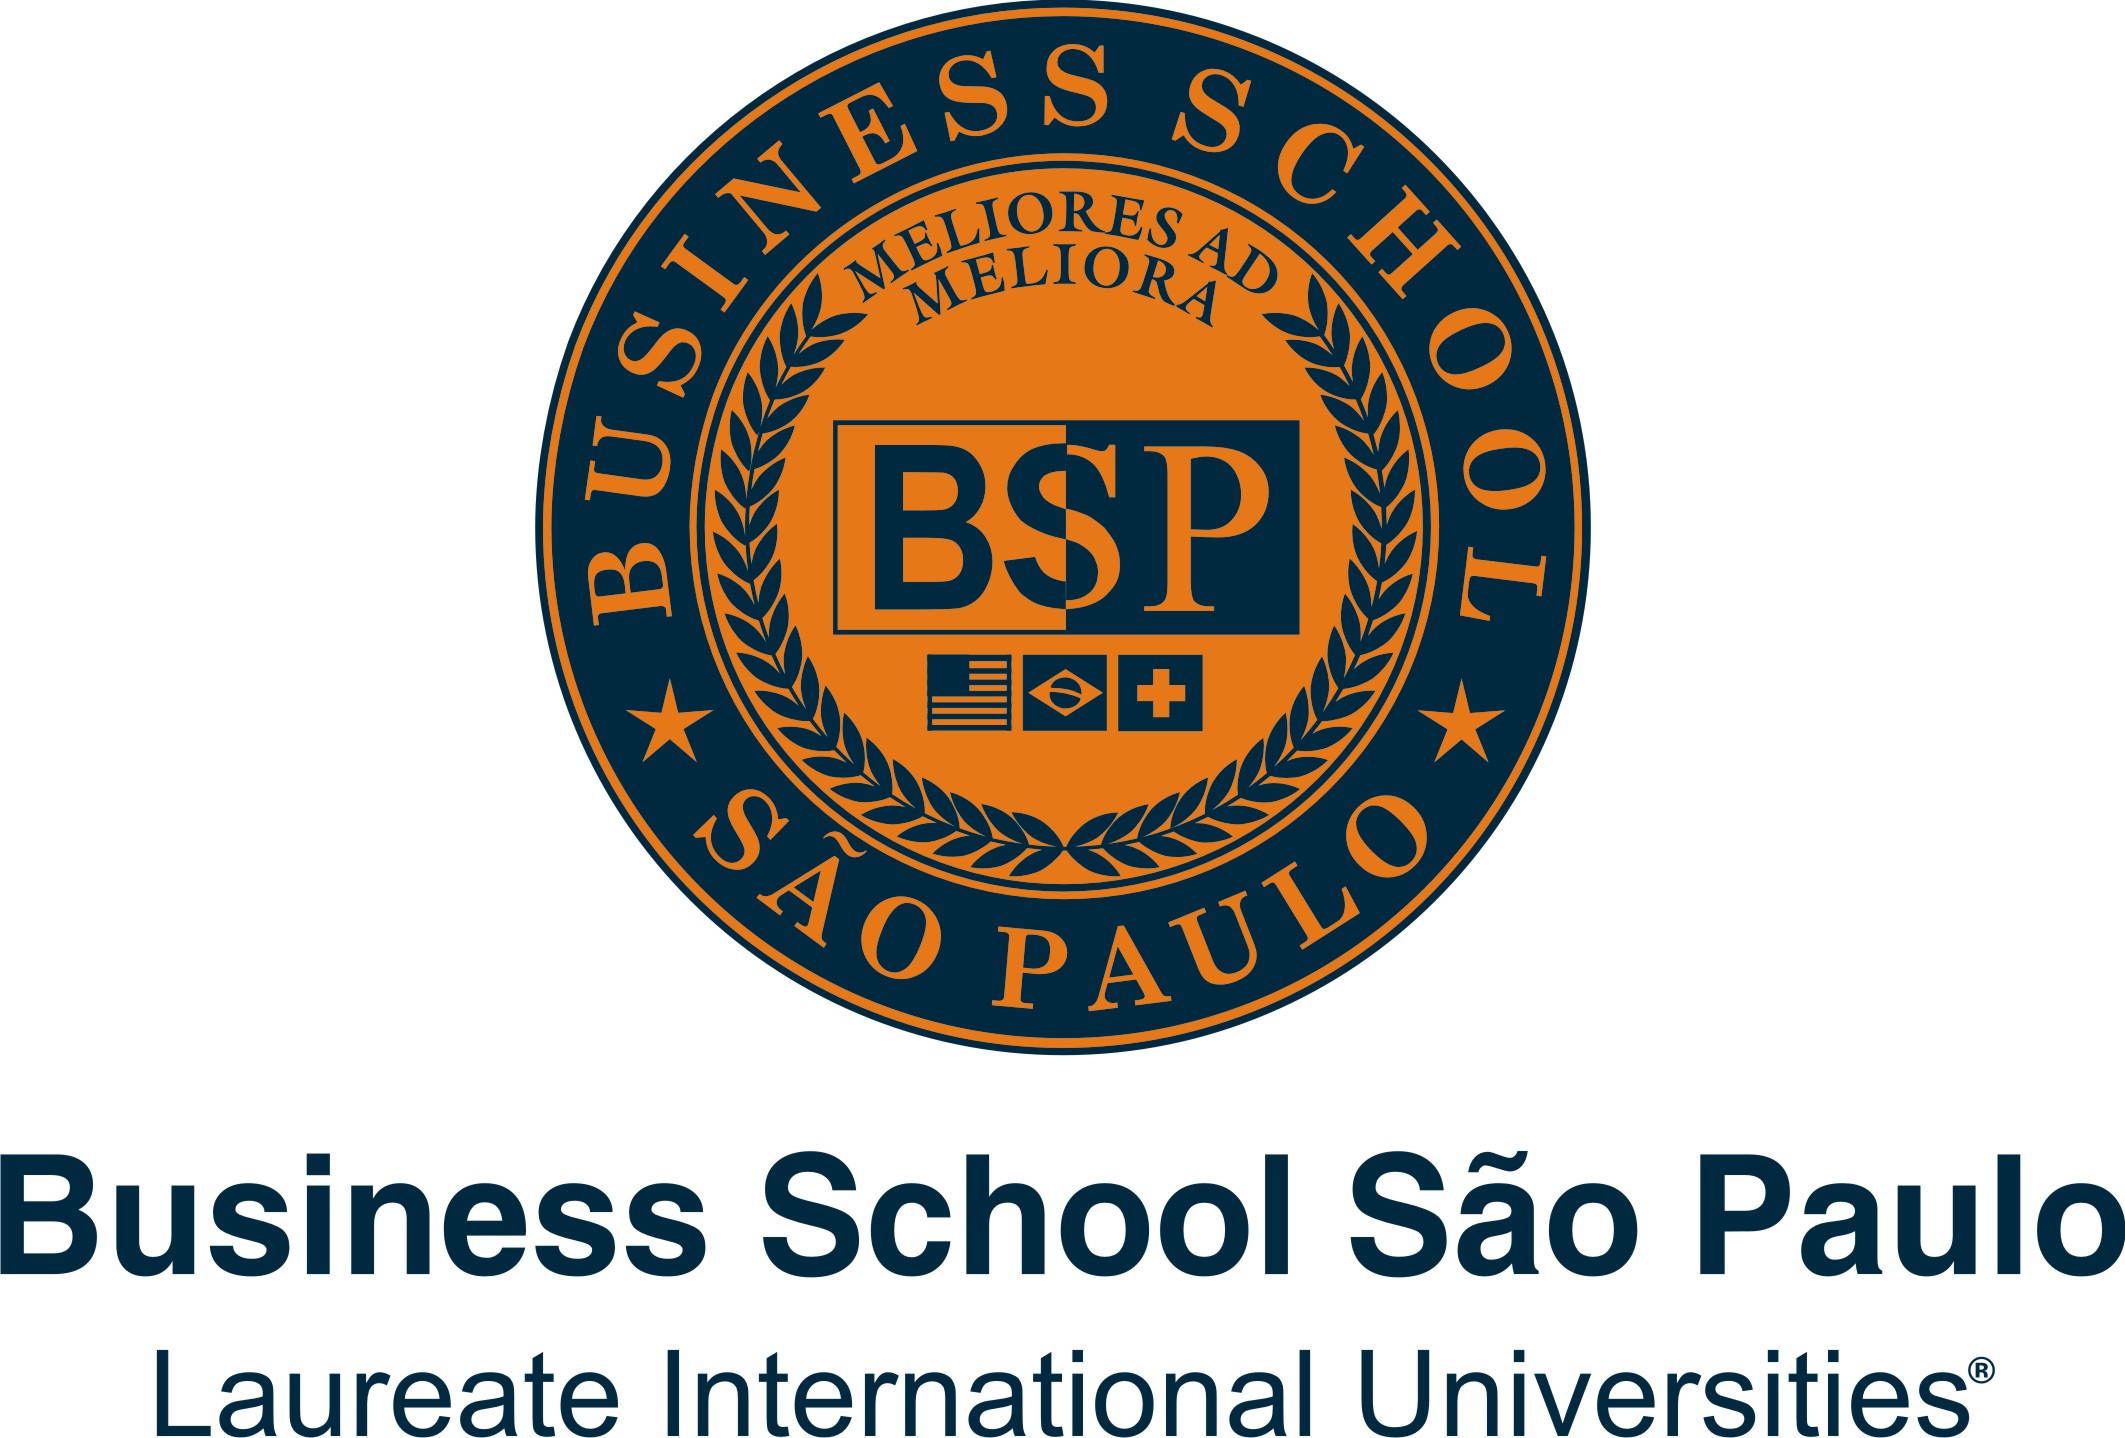 Logo BSP Business School São Paulo